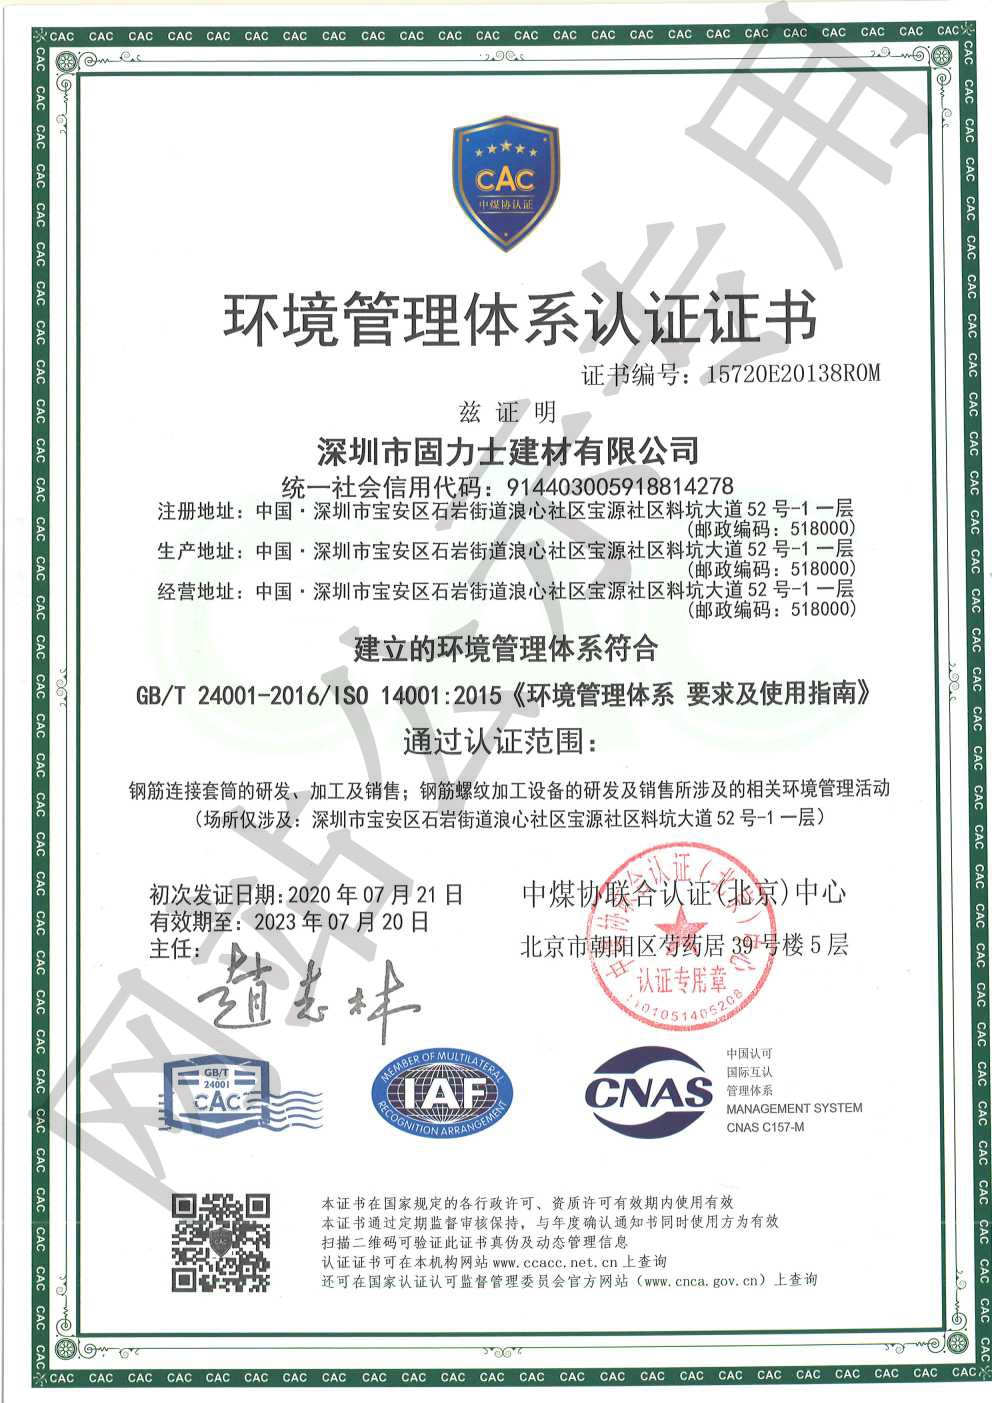 雷鸣镇ISO14001证书